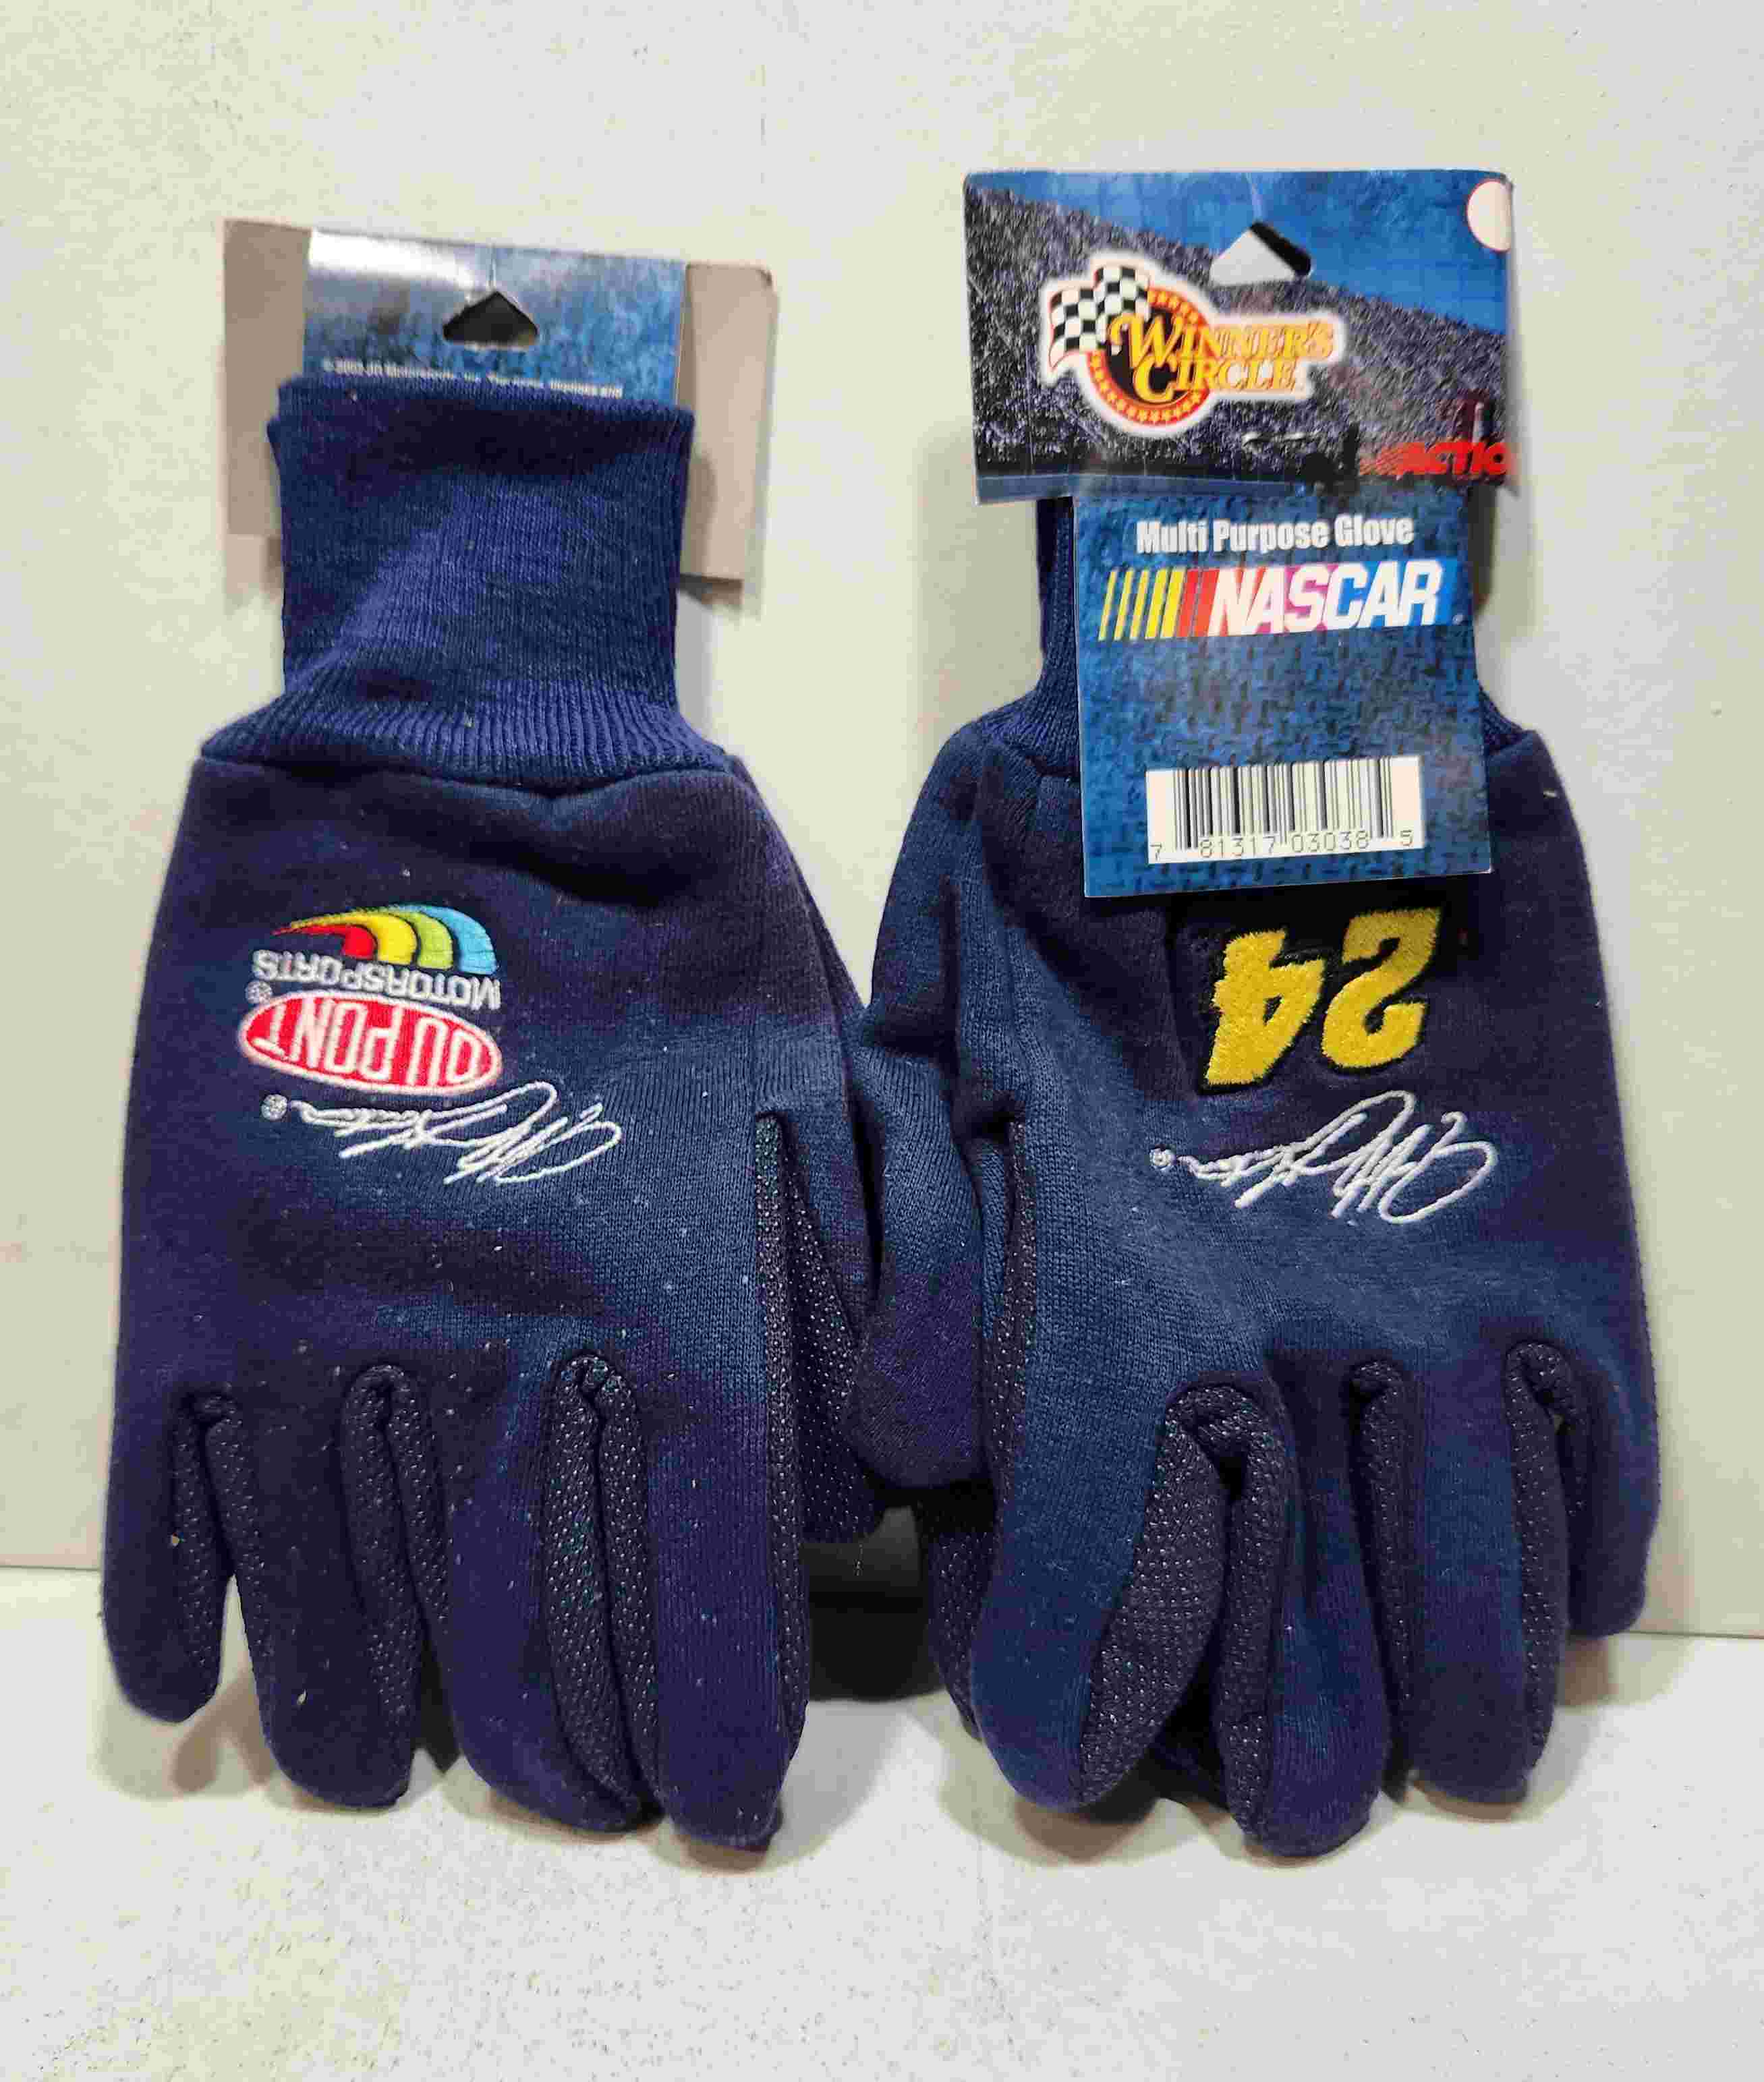 2003 Jeff Gordon #24 DuPont multi purpose gloves one pair